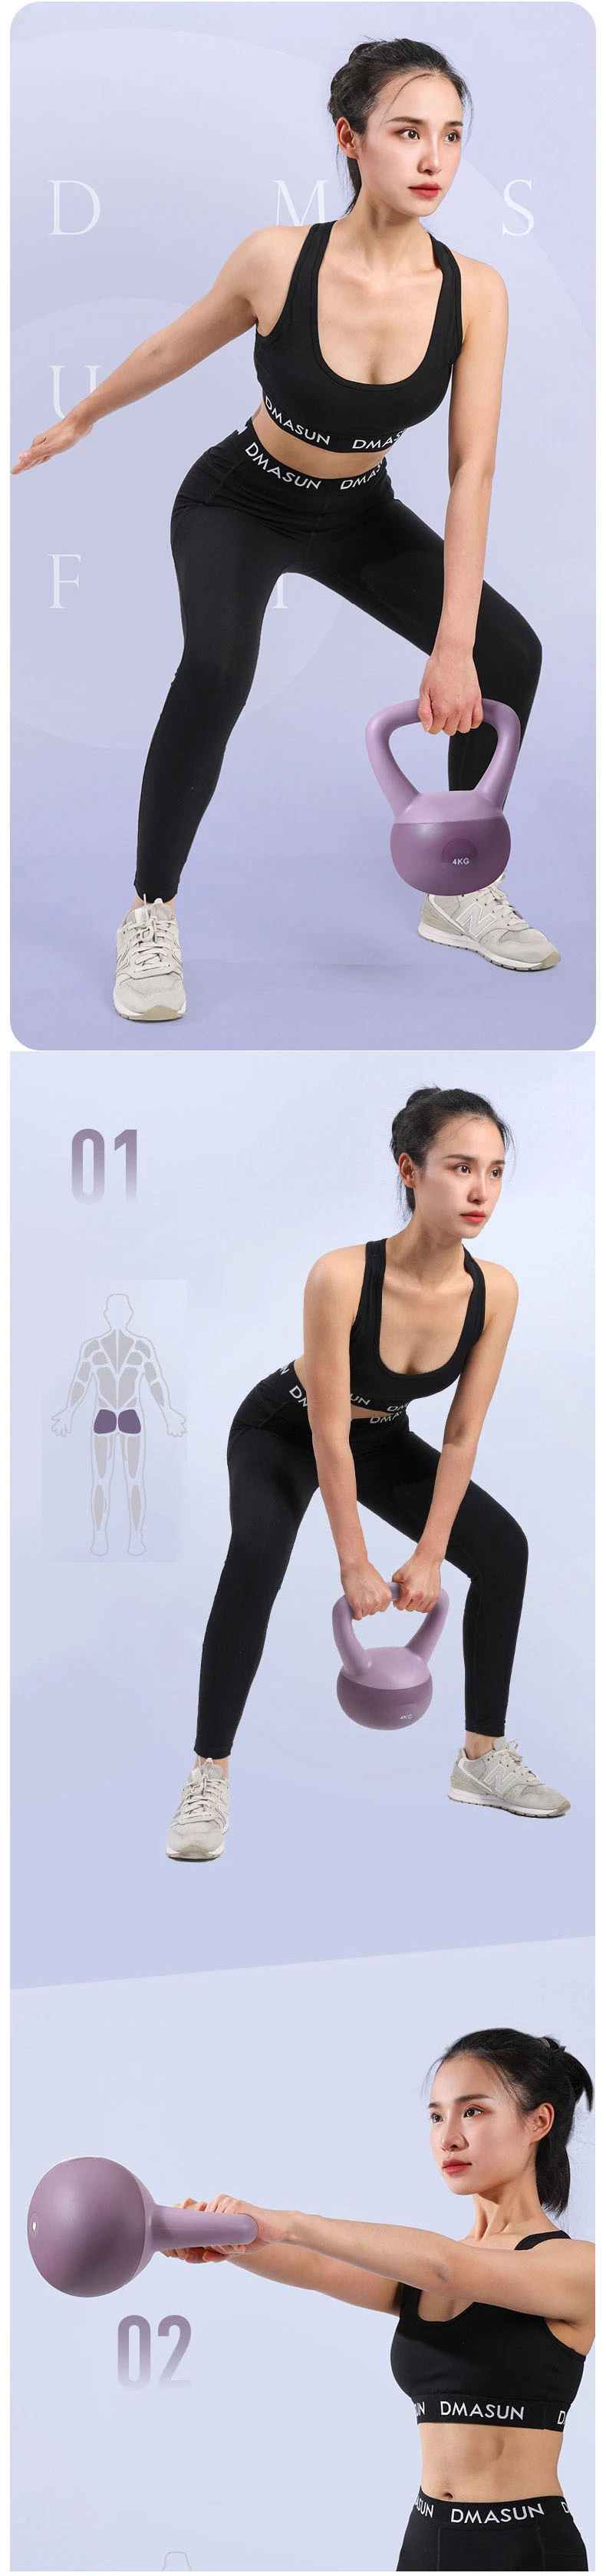 5kg Fitness Training Gym Strength Floor Protect PVC Soft Kettlebell Custom Logo Kettlebell